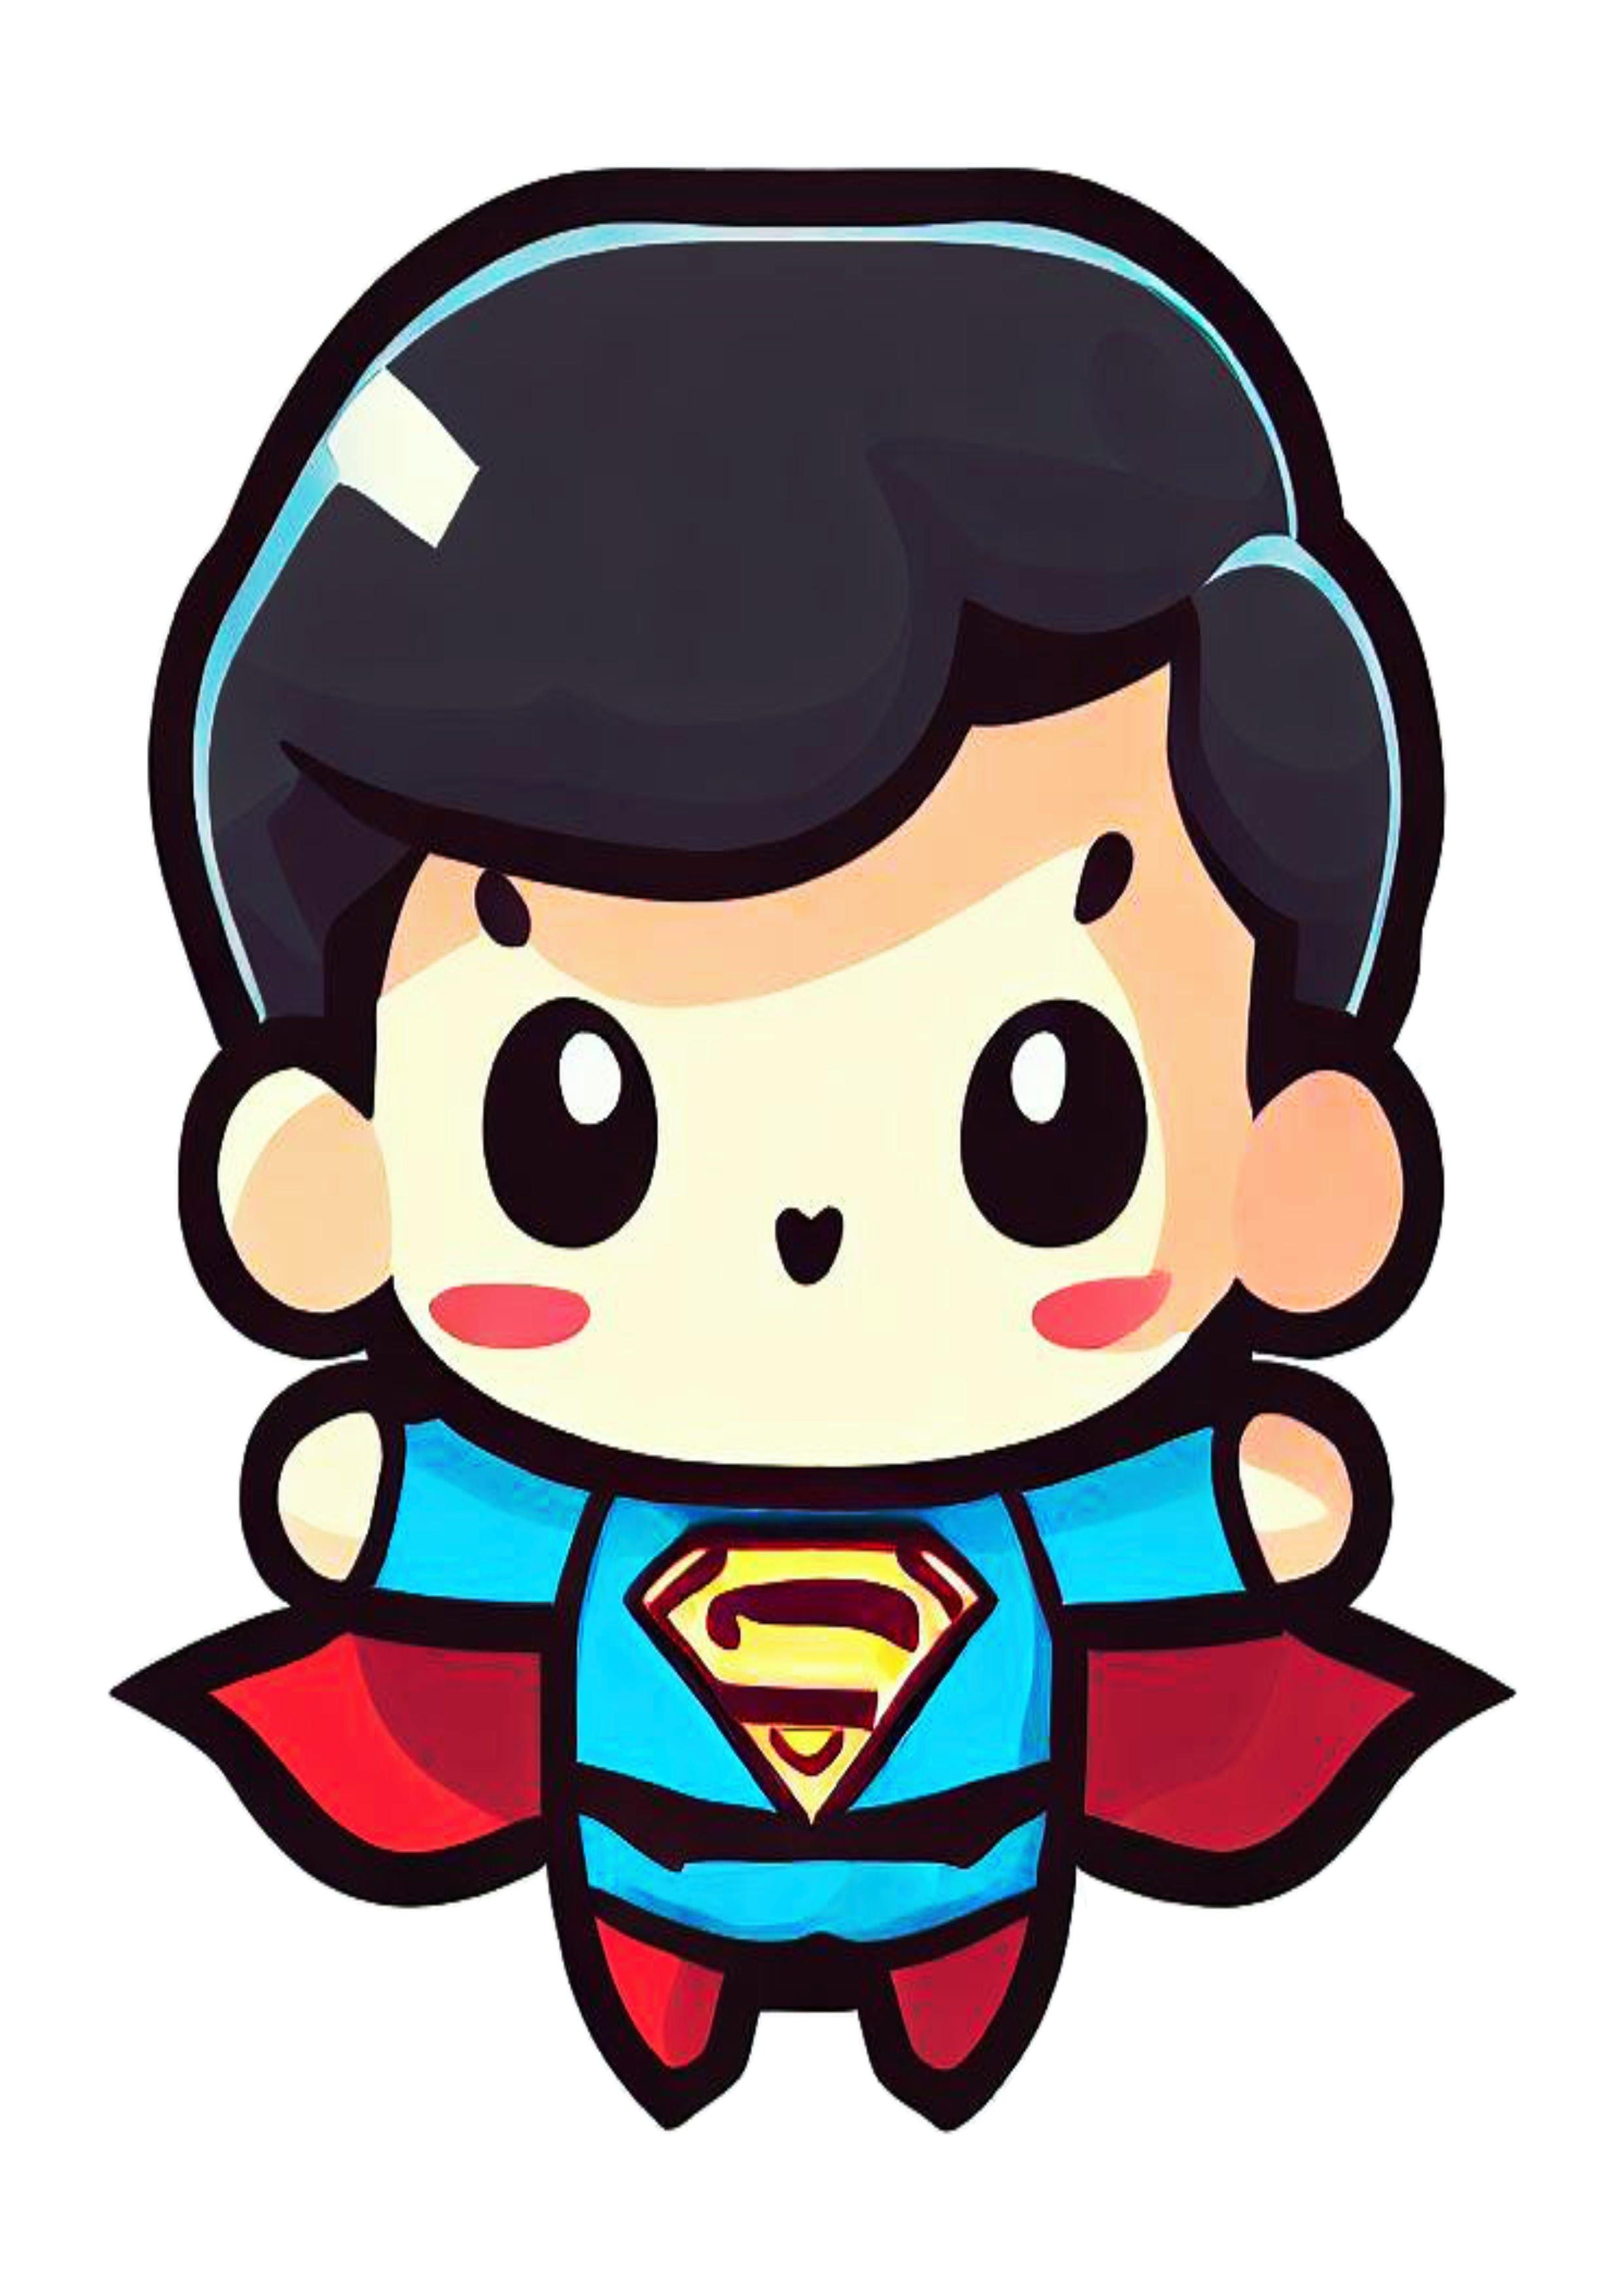 Super homem baby fofinho cute superman heroi fantasia infantil bonitinho ilustração desenho animado pack de imagens design png